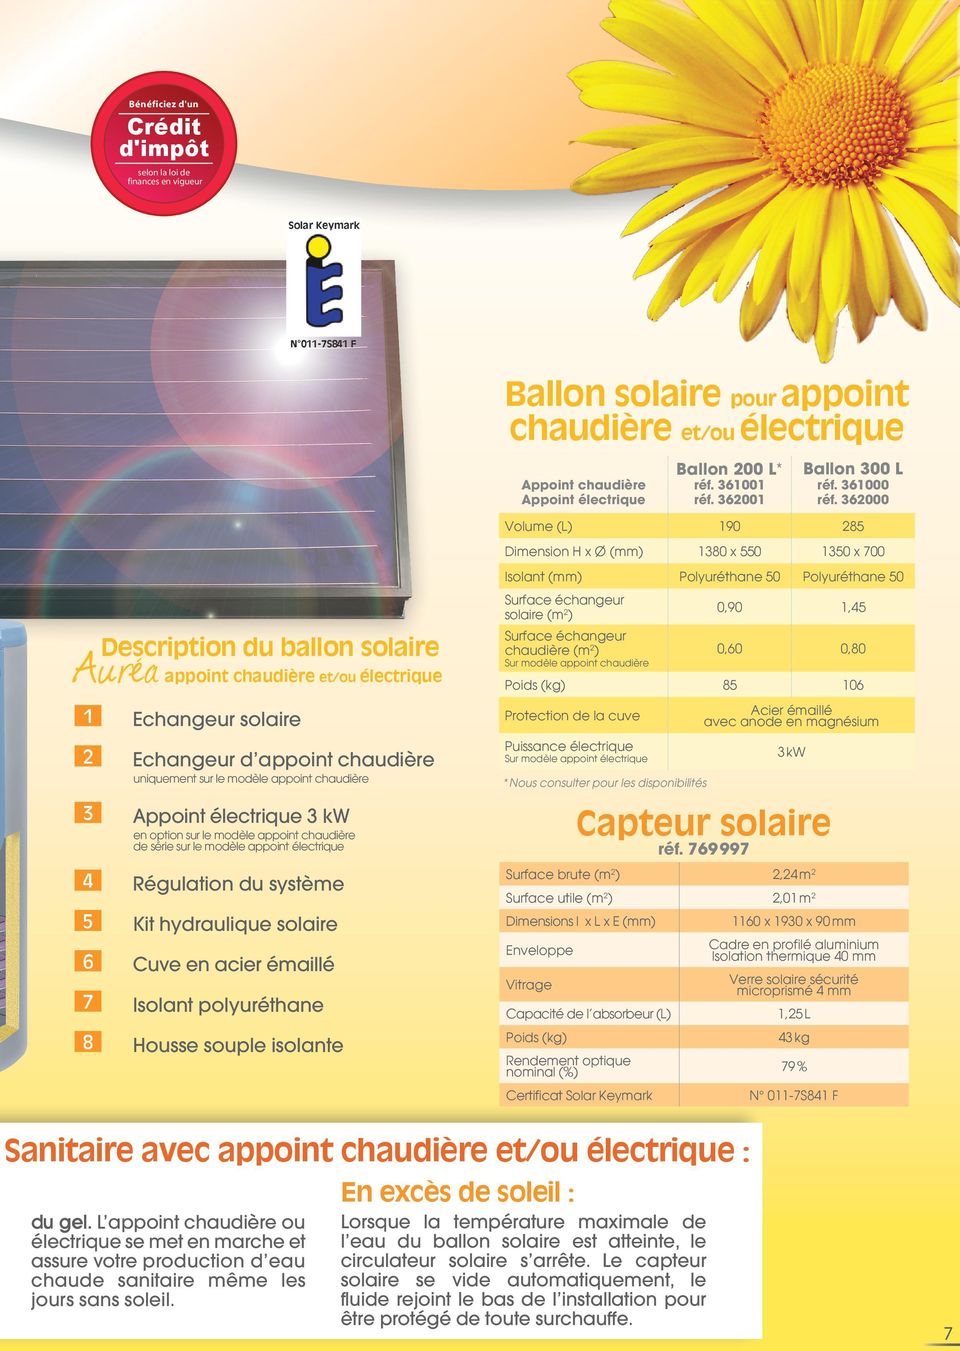 6001 Volume (L) Dimension H x Ø (mm) Isolant (mm) Auréa Description du ballon solaire appoint chaudière et/ou électrique 1 Echangeur solaire Echangeur d appoint chaudière uniquement sur le modèle